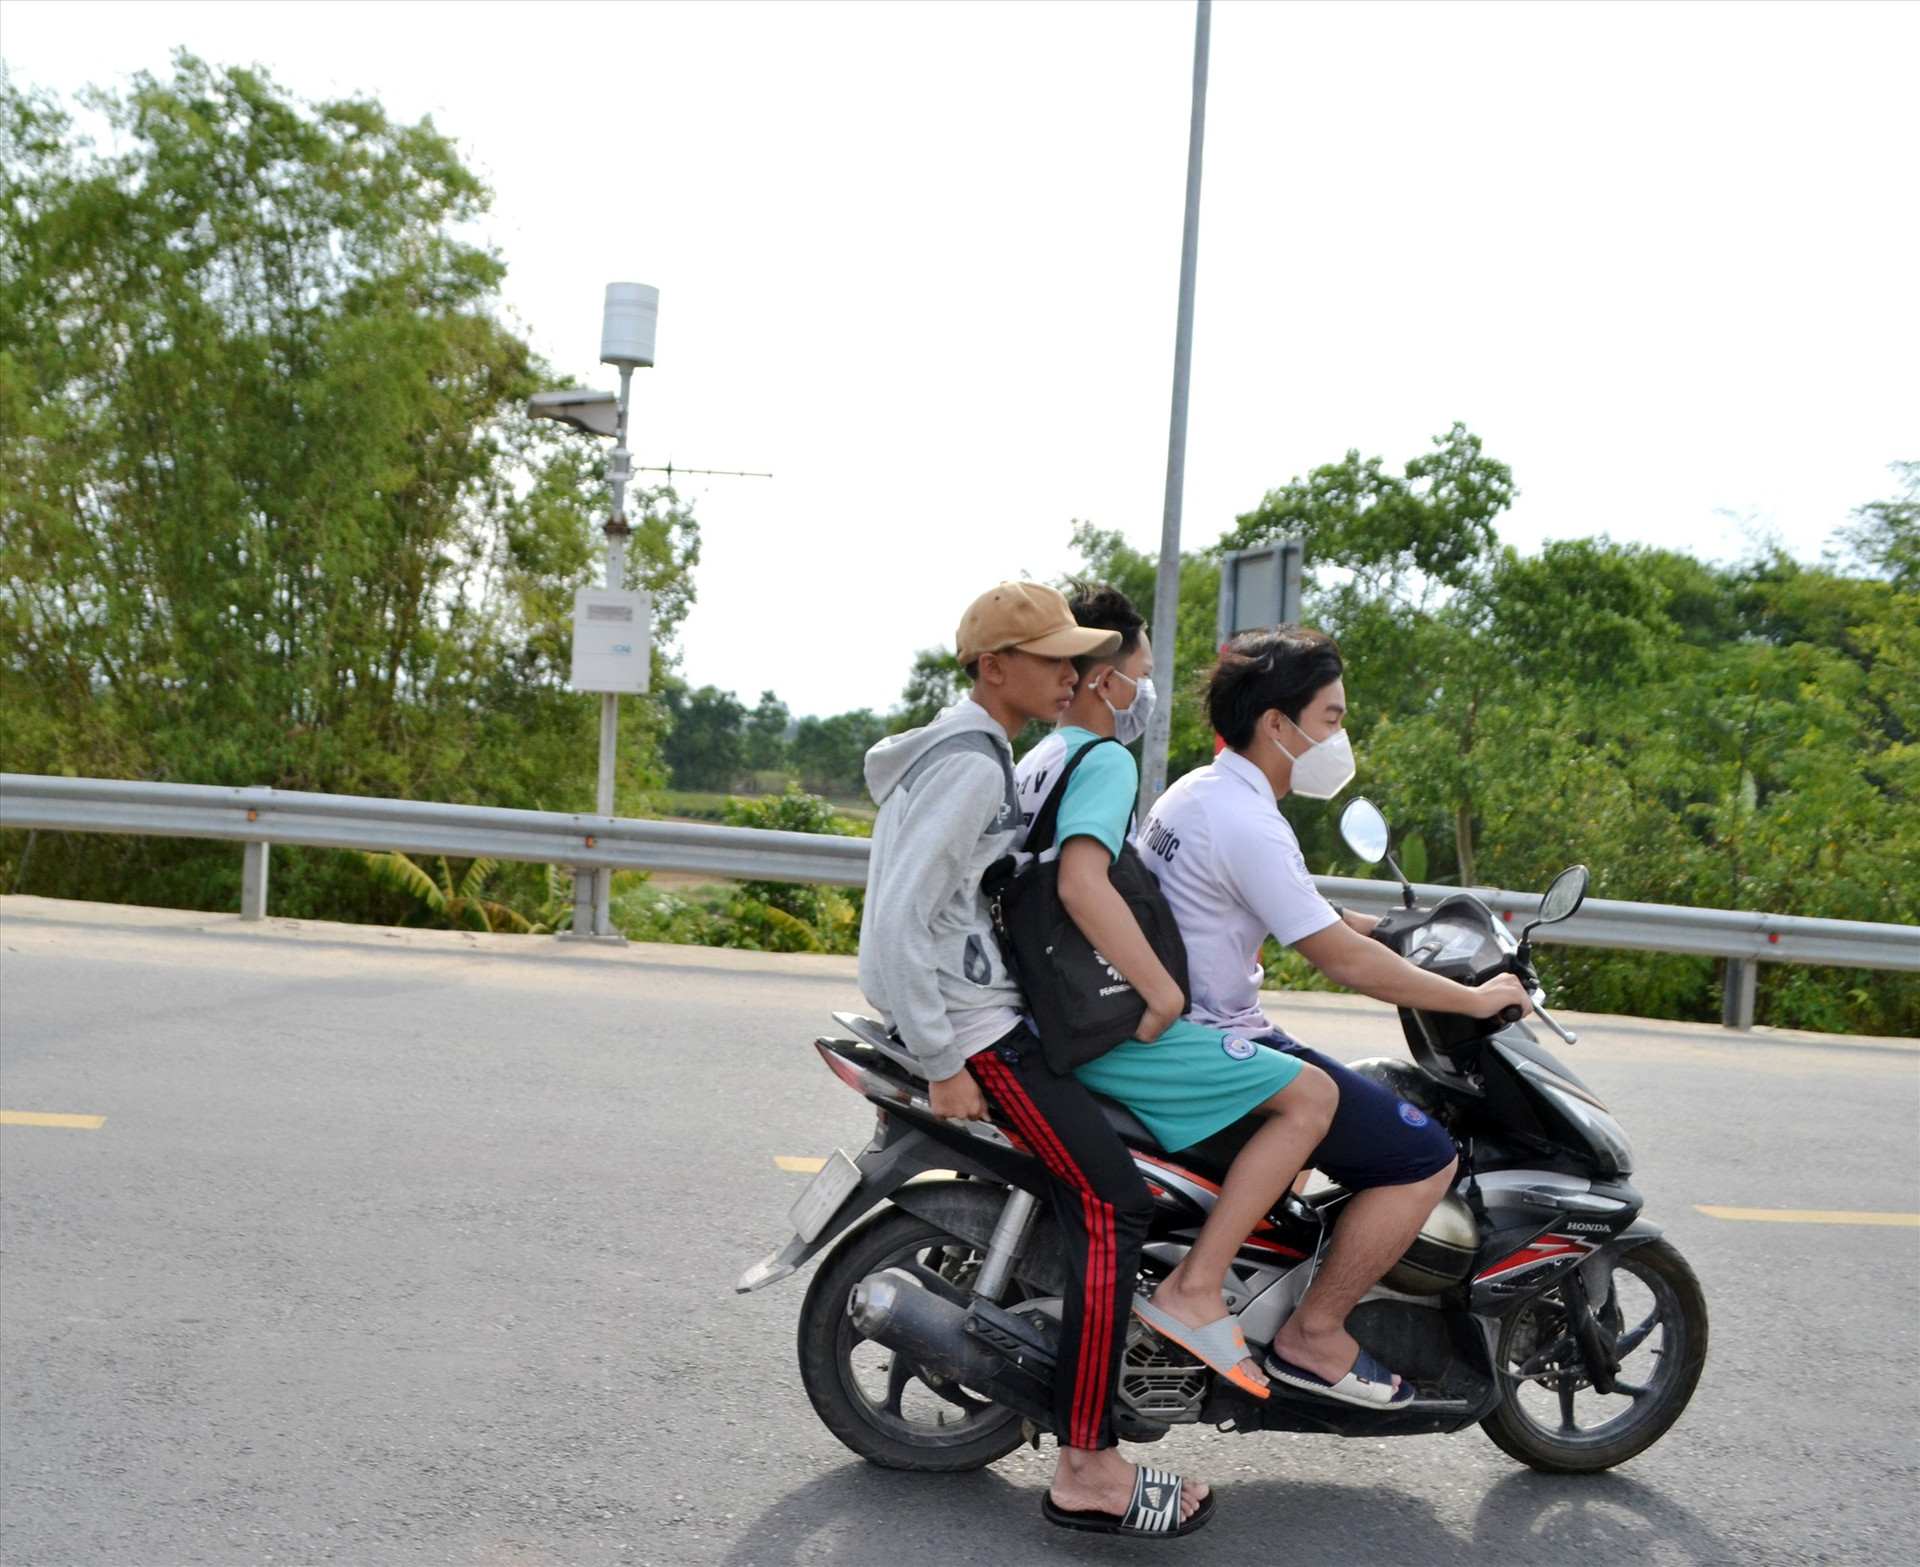 Tình trạng thanh niên, học sinh chở quá số người quy định và không đội mũ bảo hiểm khi lưu thông bằng xe máy vẫn còn diễn ra. Ảnh: K.K